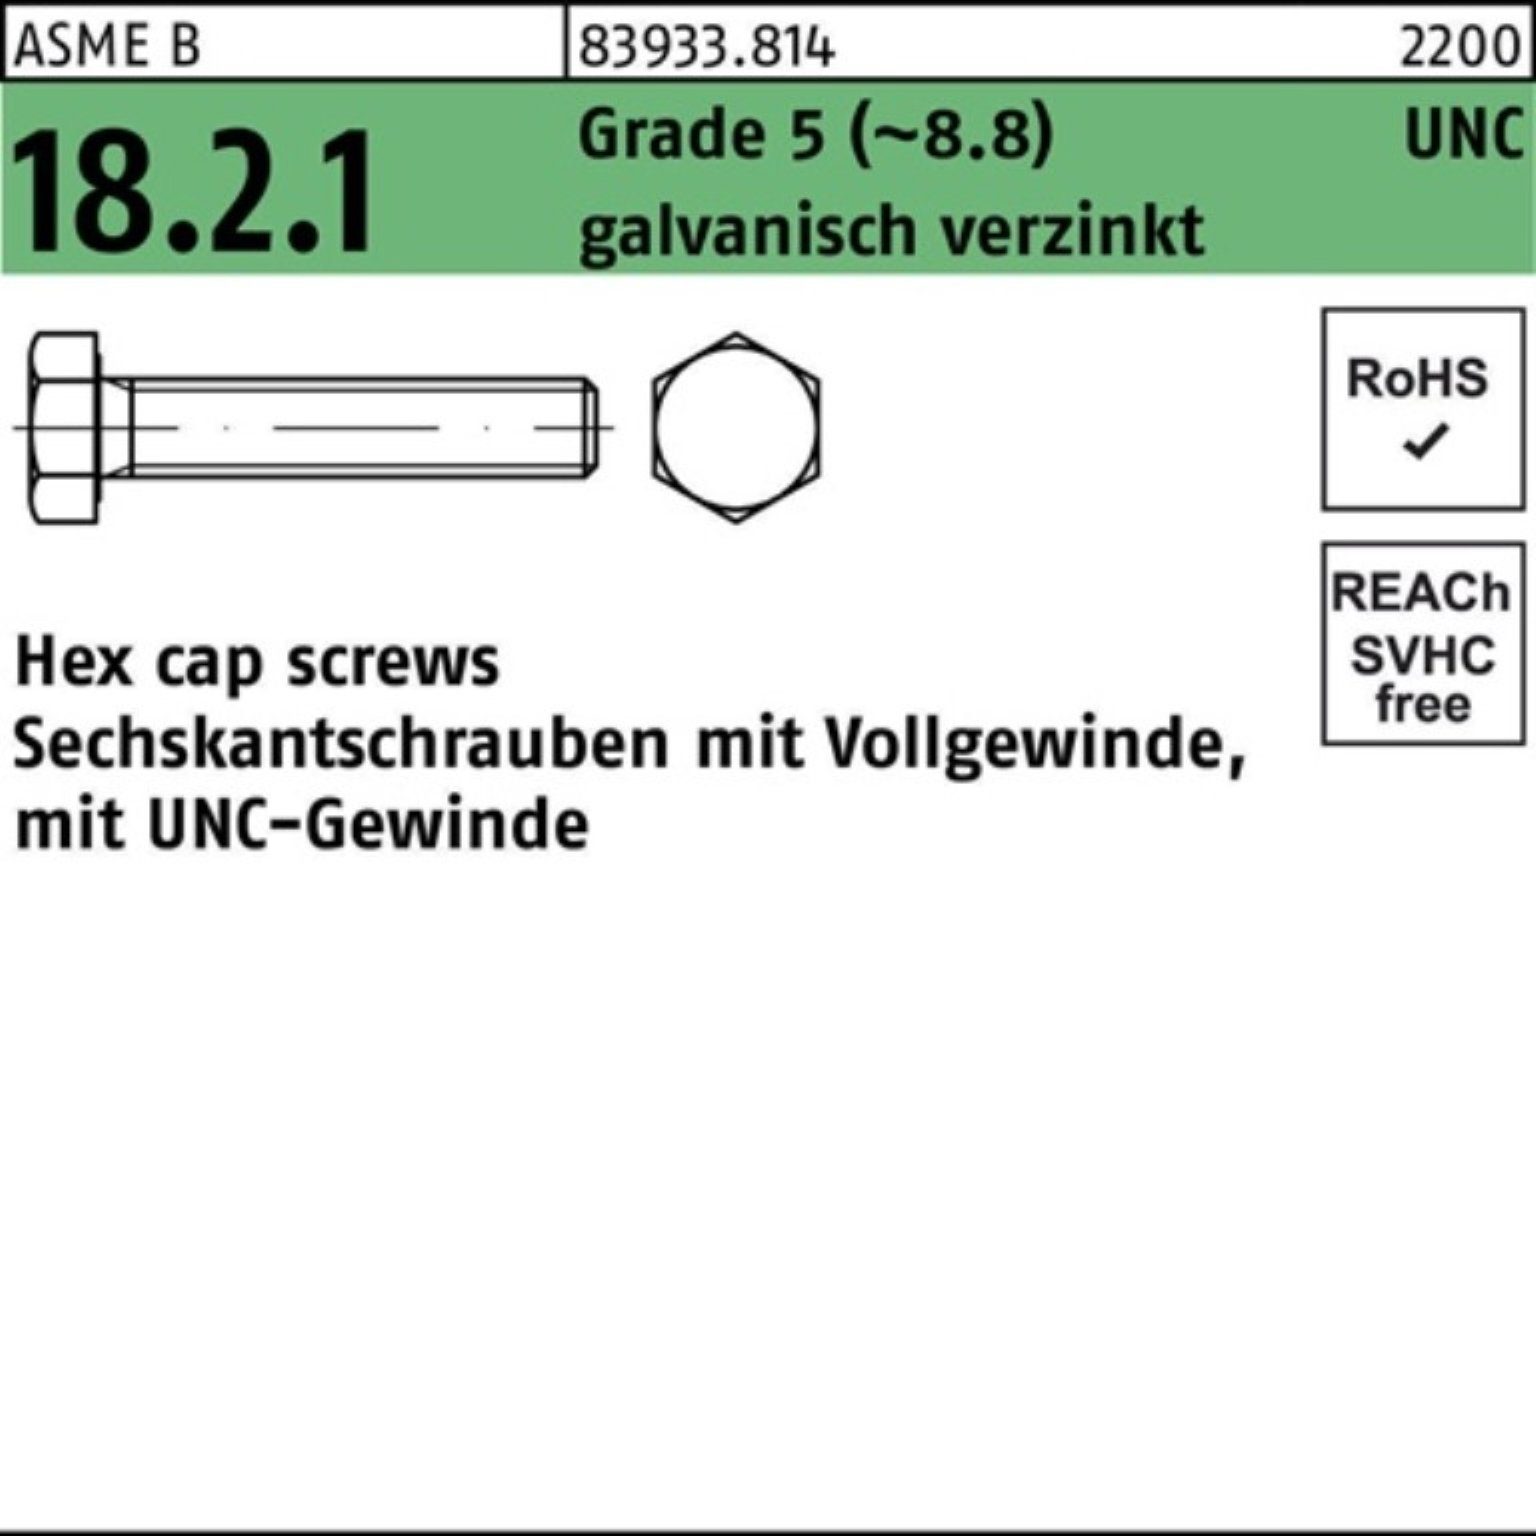 Reyher Sechskantschraube 100er Pack Sechskantschraube R 83933 UNC VG 1/4x7/8 Grade 5 (8.8) gal